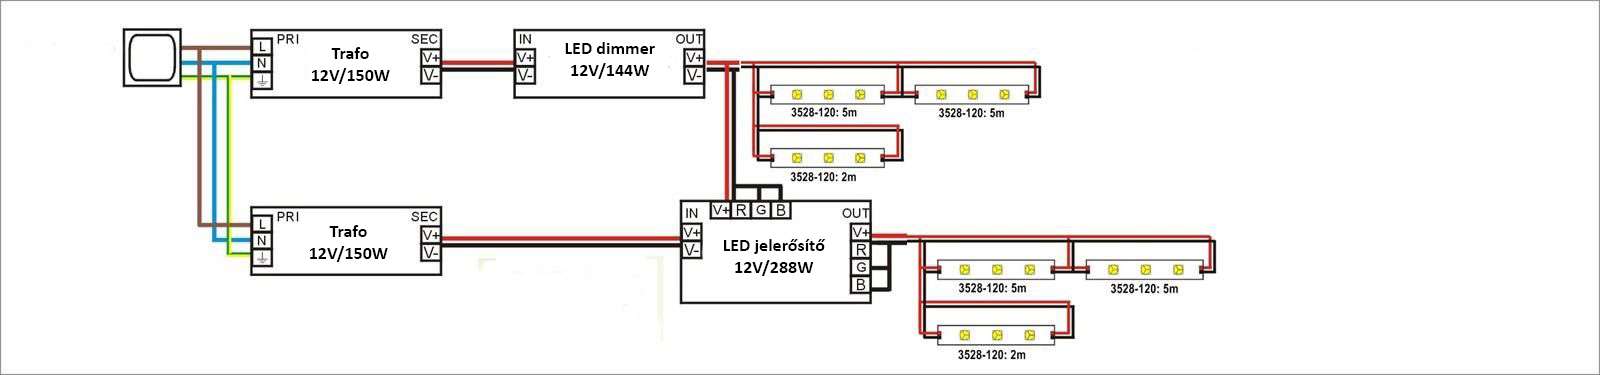 3528-120 LED szalag bekötési rajz dimmerel, jelerősítővel és két trafoval